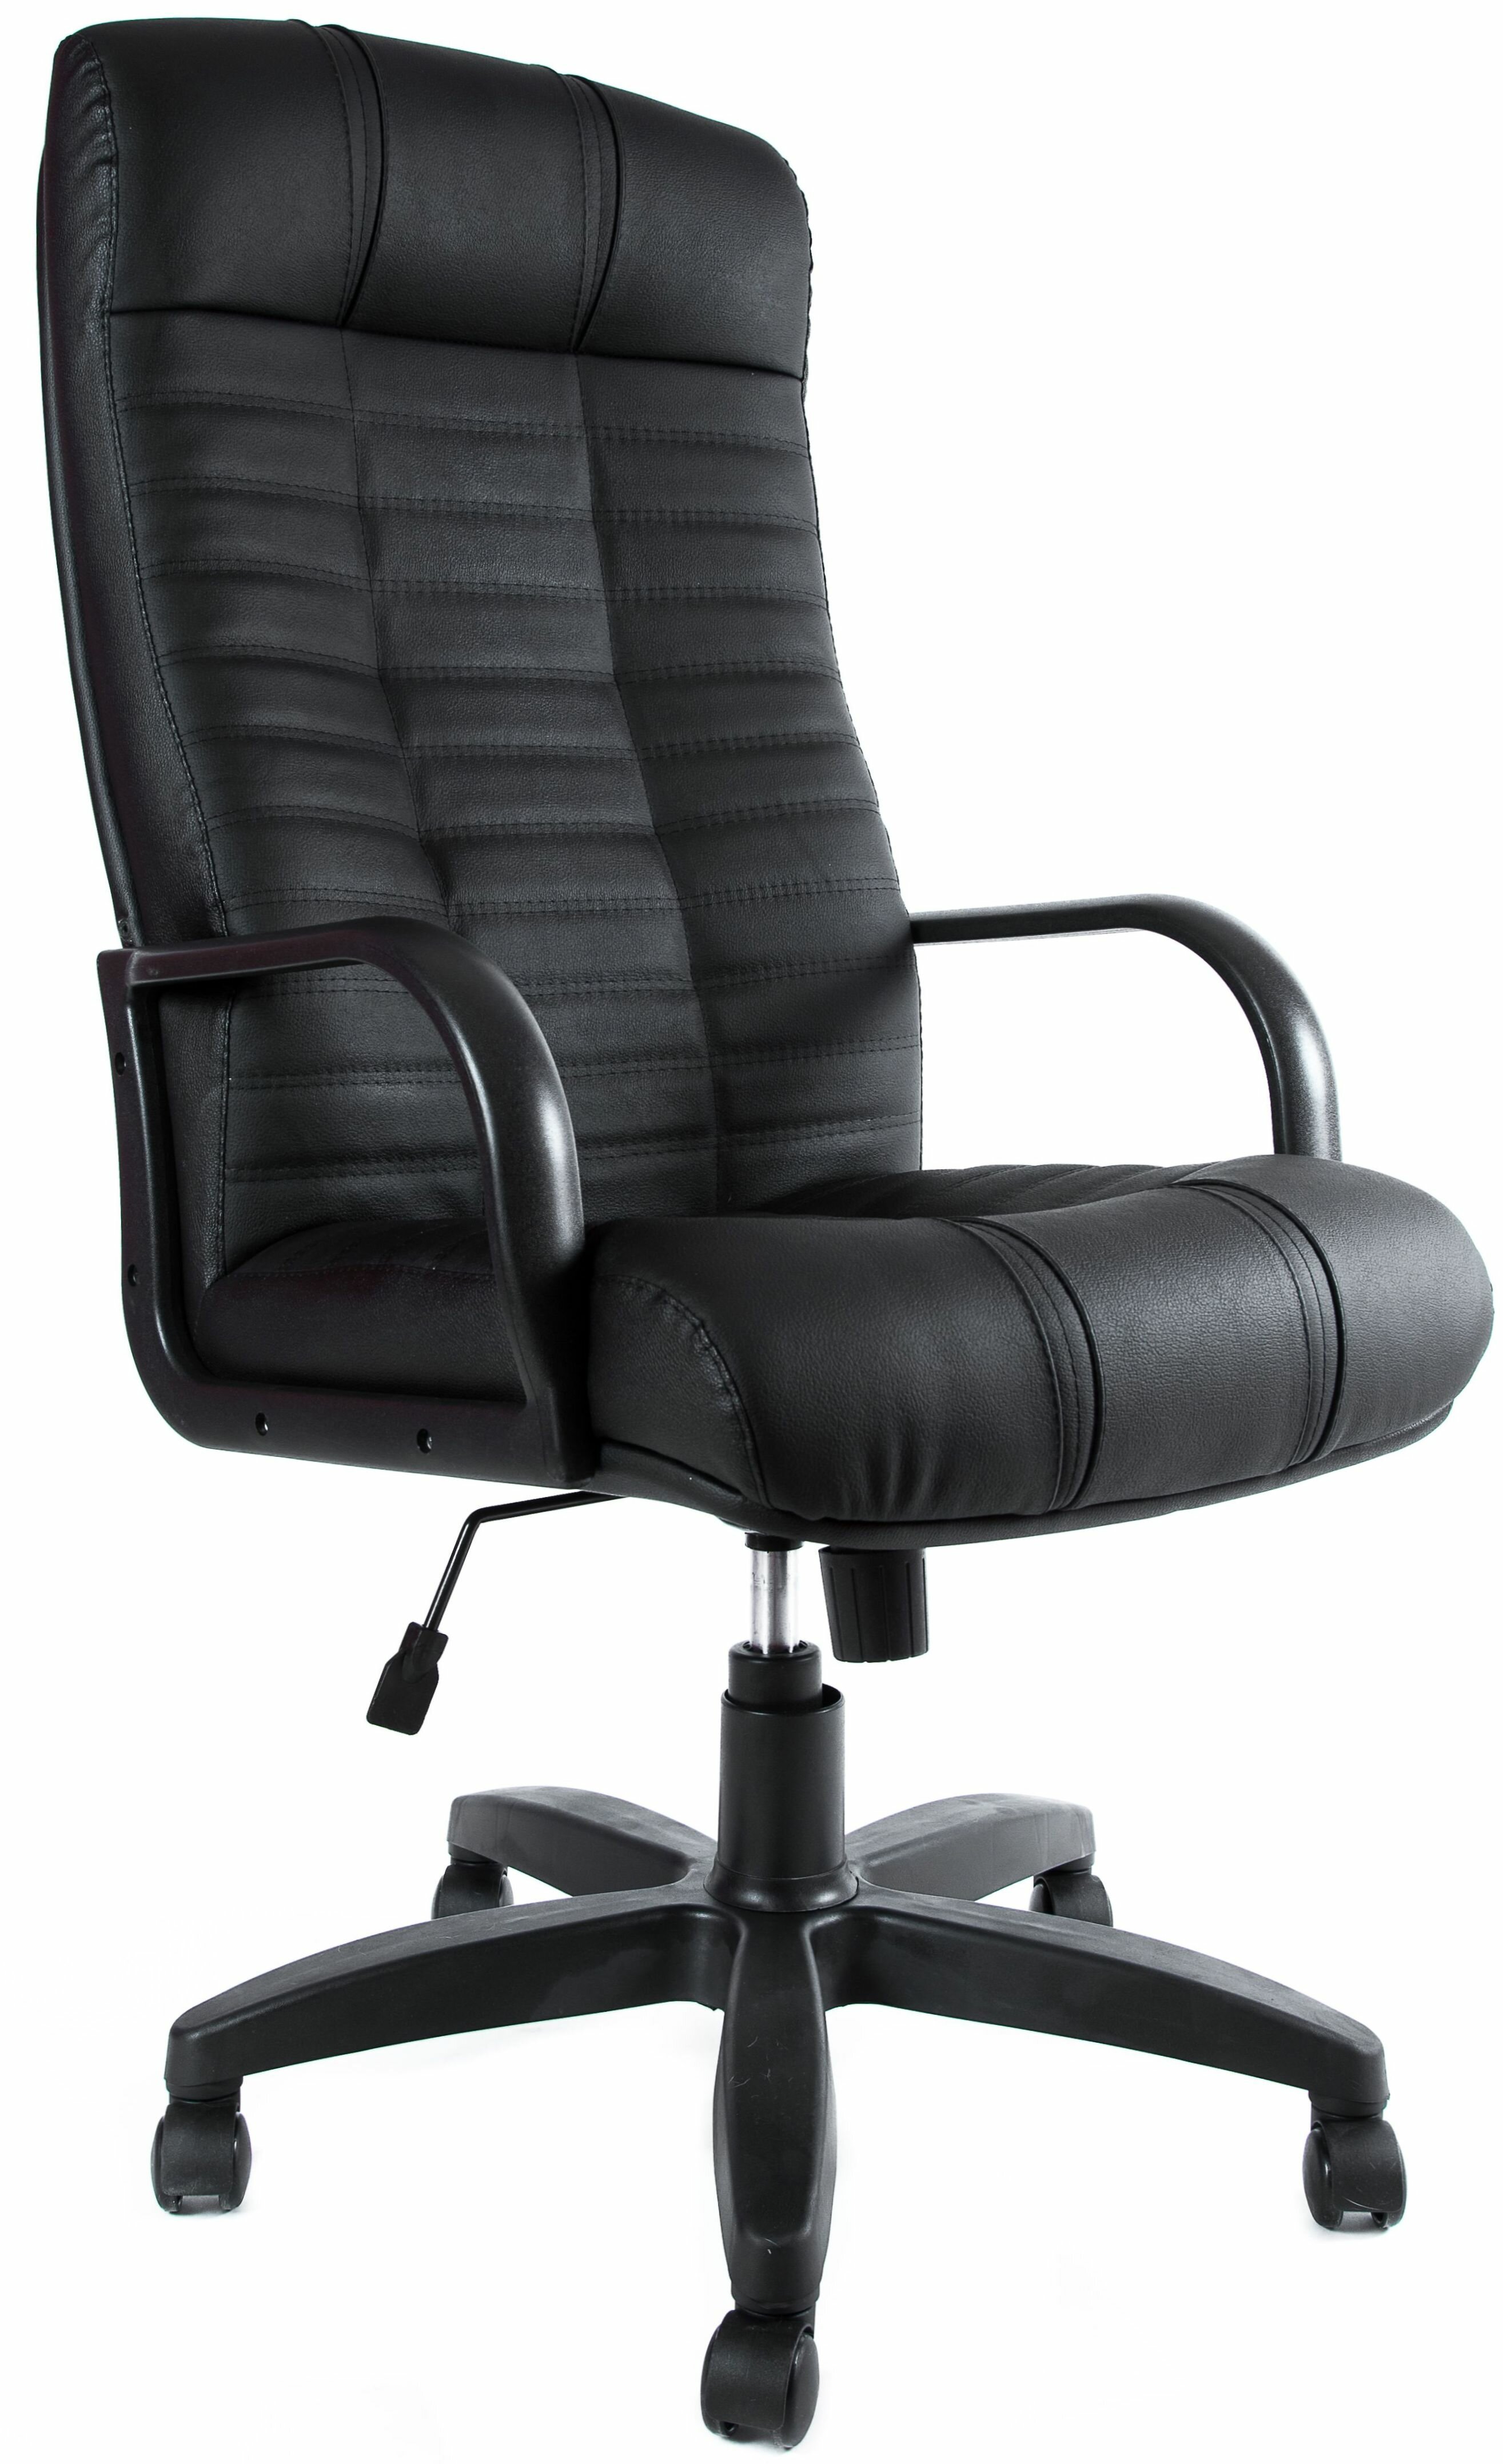 Компьютерное кресло Евростиль Атлант офисное обивка: искусственная кожа цвет: черный